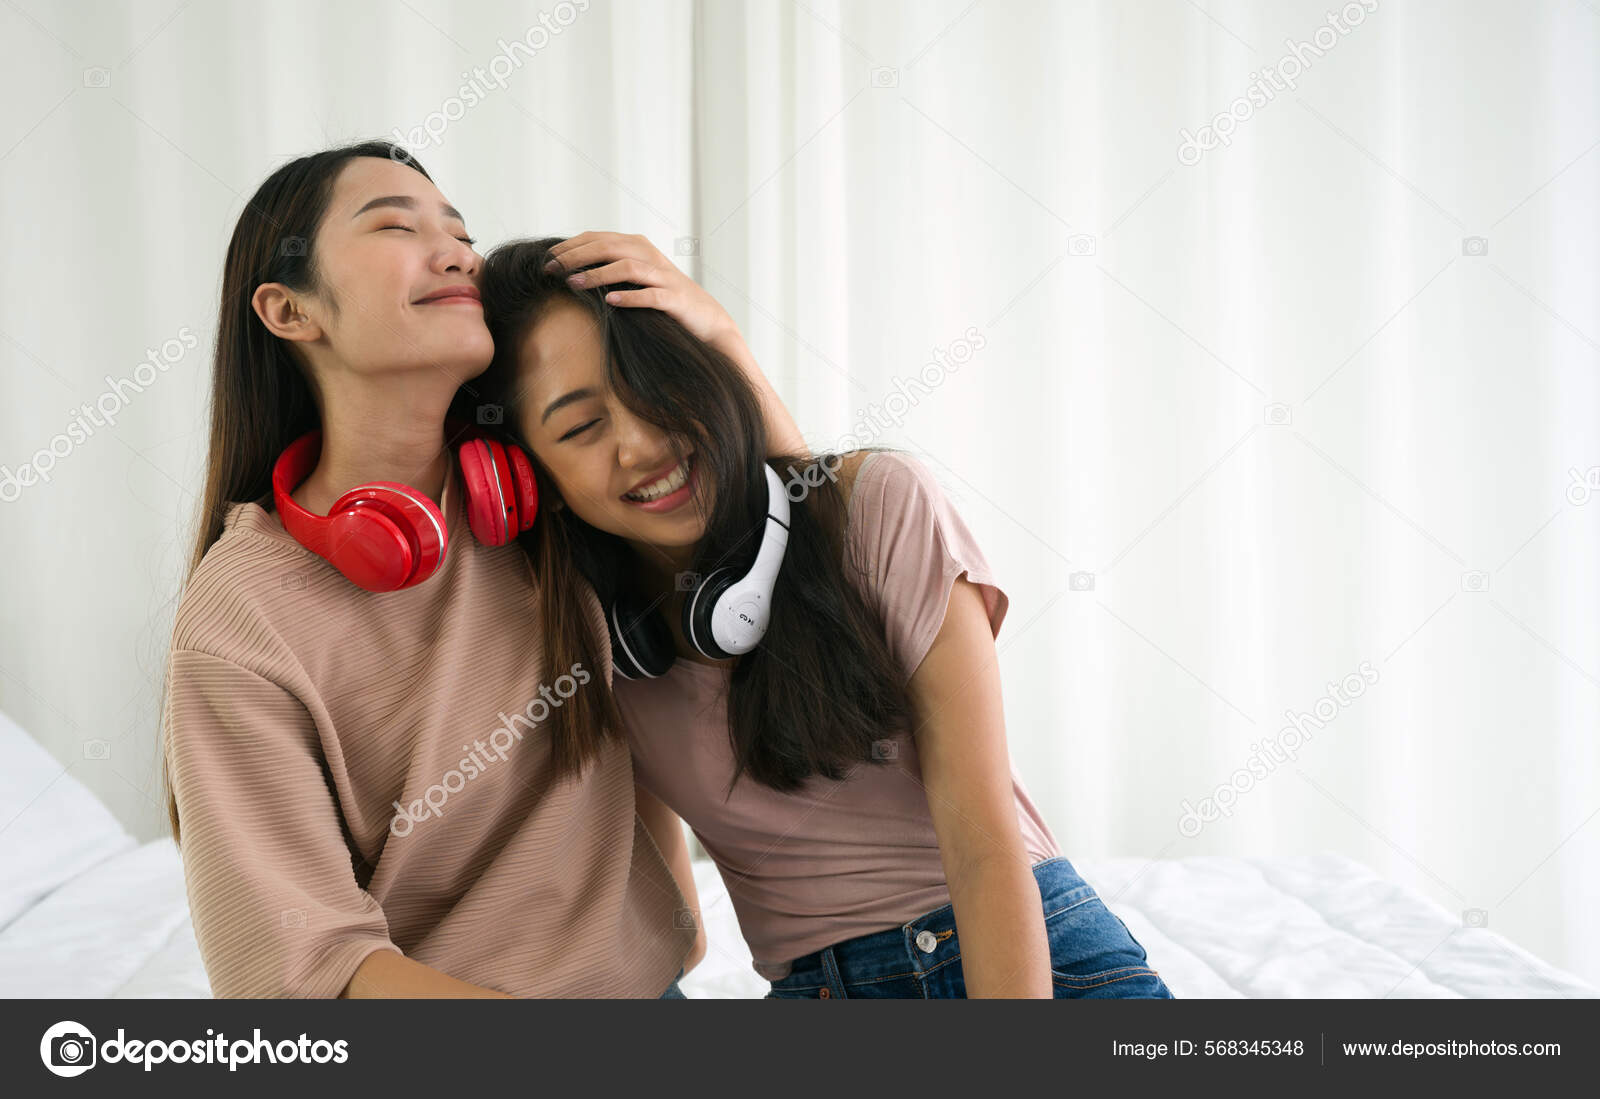 Teen Asians Lesbians